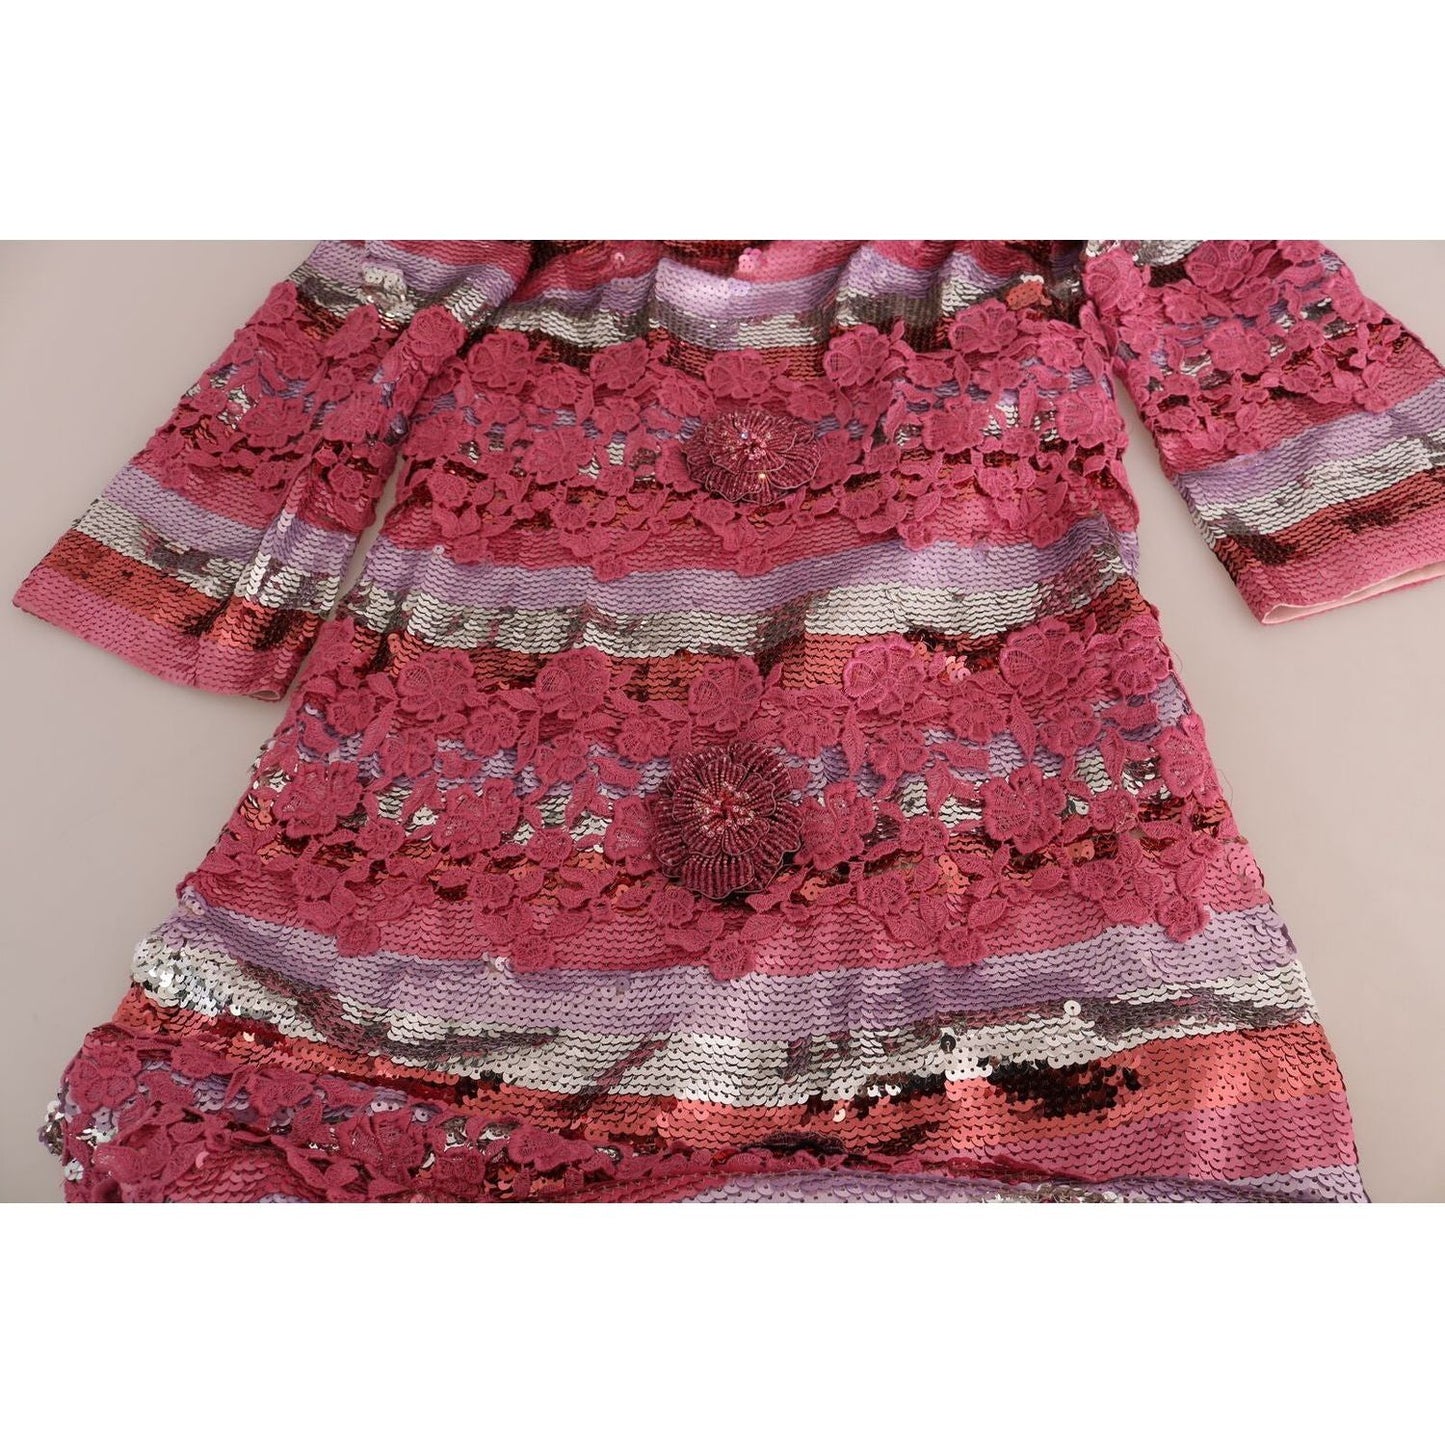 Dolce & Gabbana | Pink Floral Sequined Crystal Gown Dress | McRichard Designer Brands